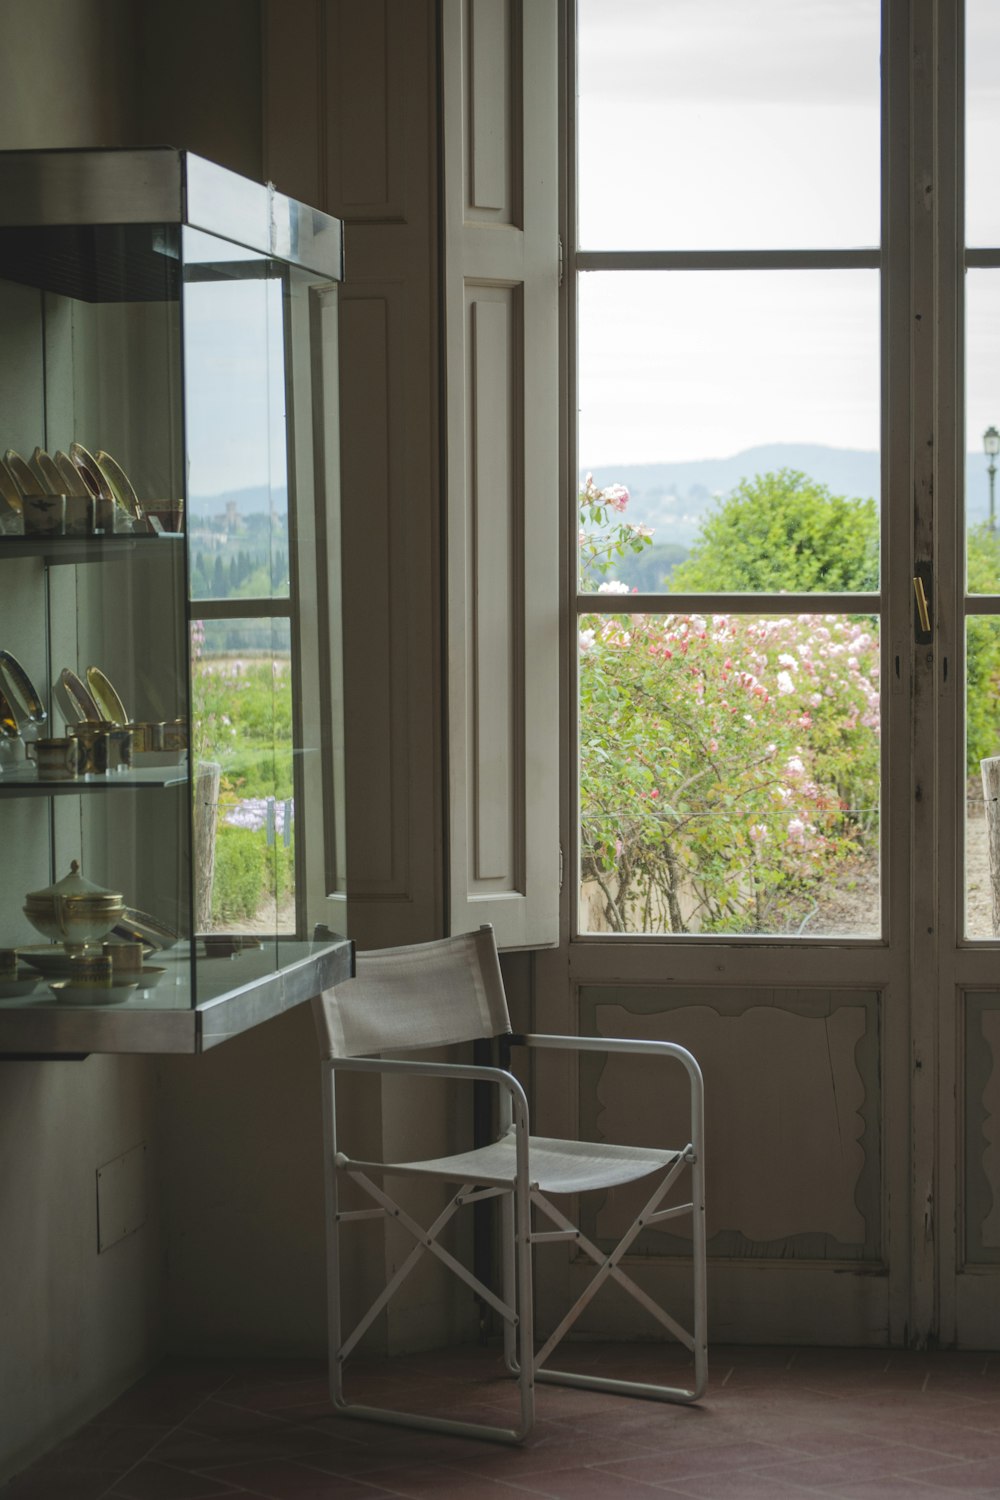 창문과 진열장 근처의 빈 흰색 접이식 의자